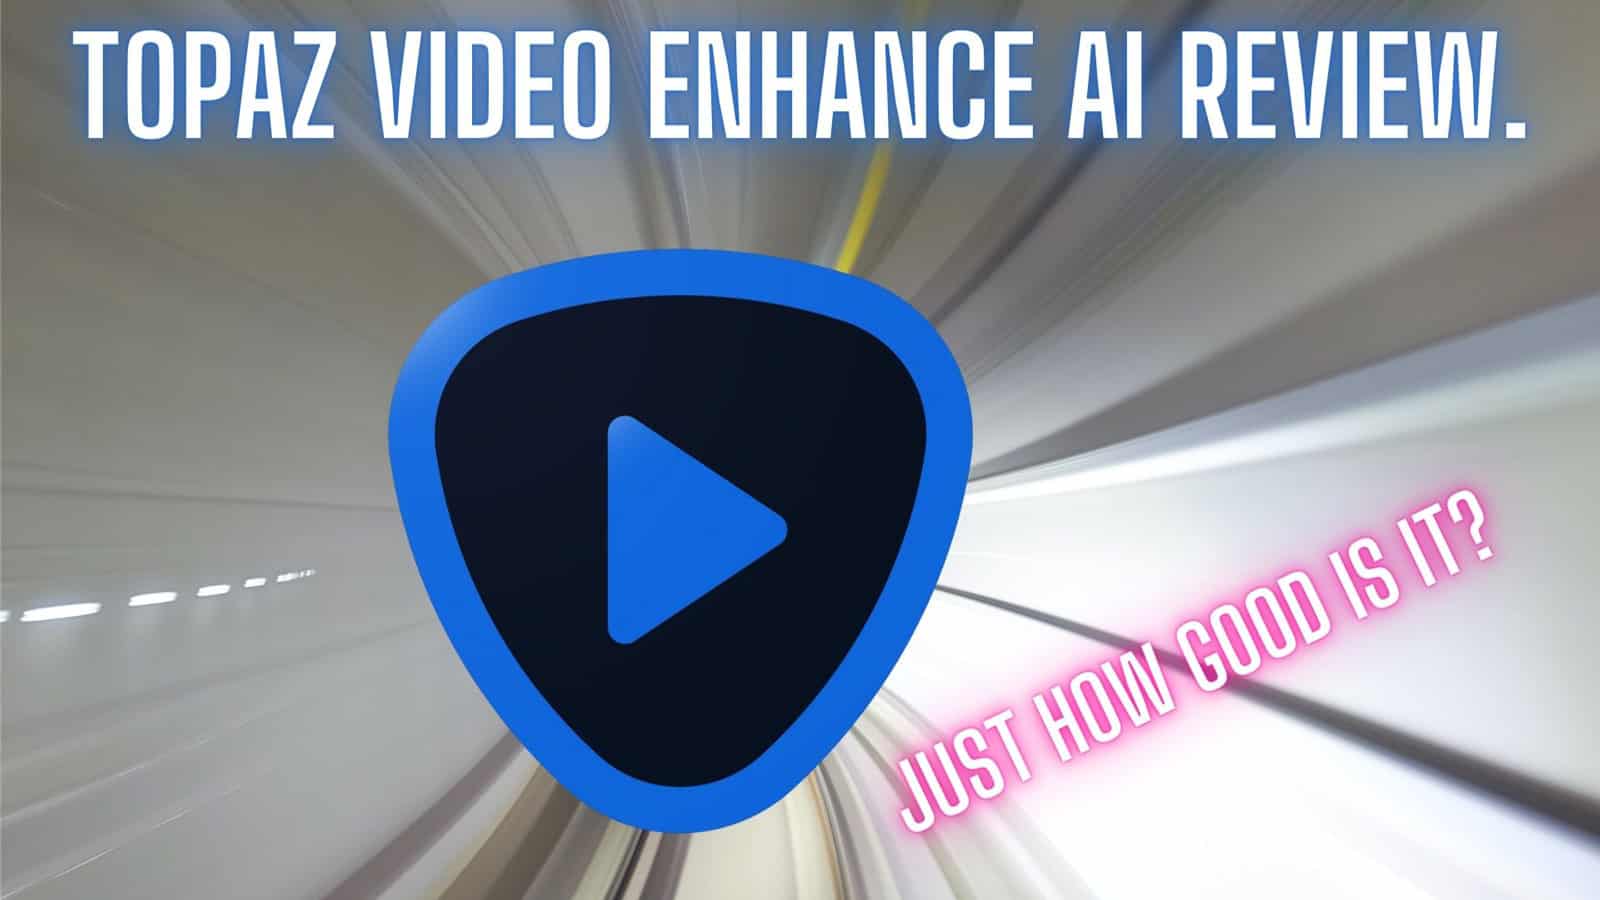 Topaz Video Enhance AI review